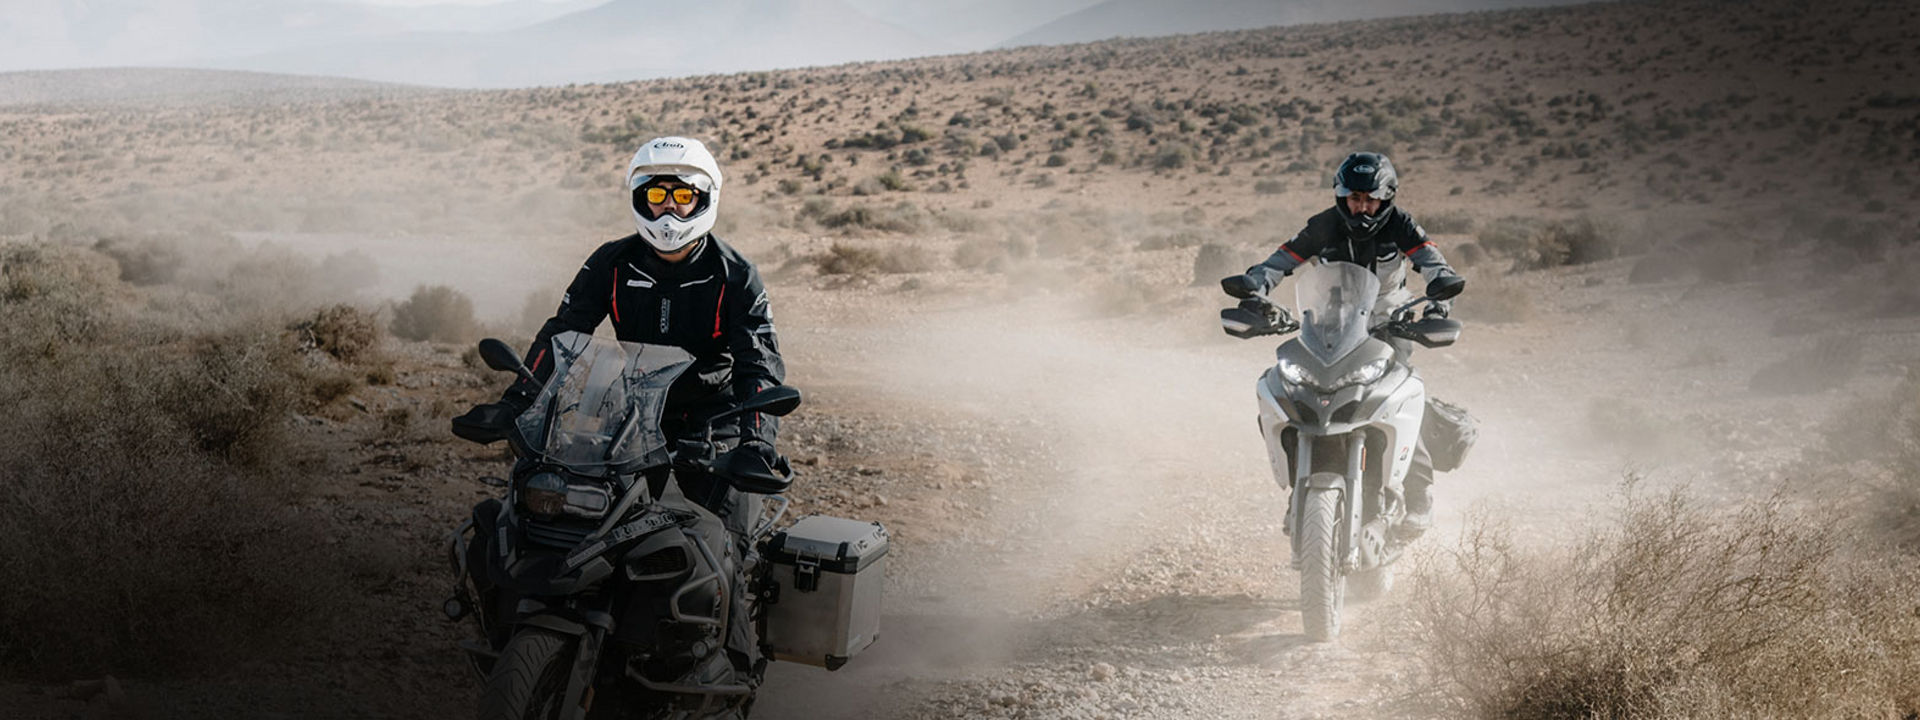 Bilden visar två motorcyklister som använder Bridgestone´s Adventure-däck när de utforskar öknen på motorcykel.